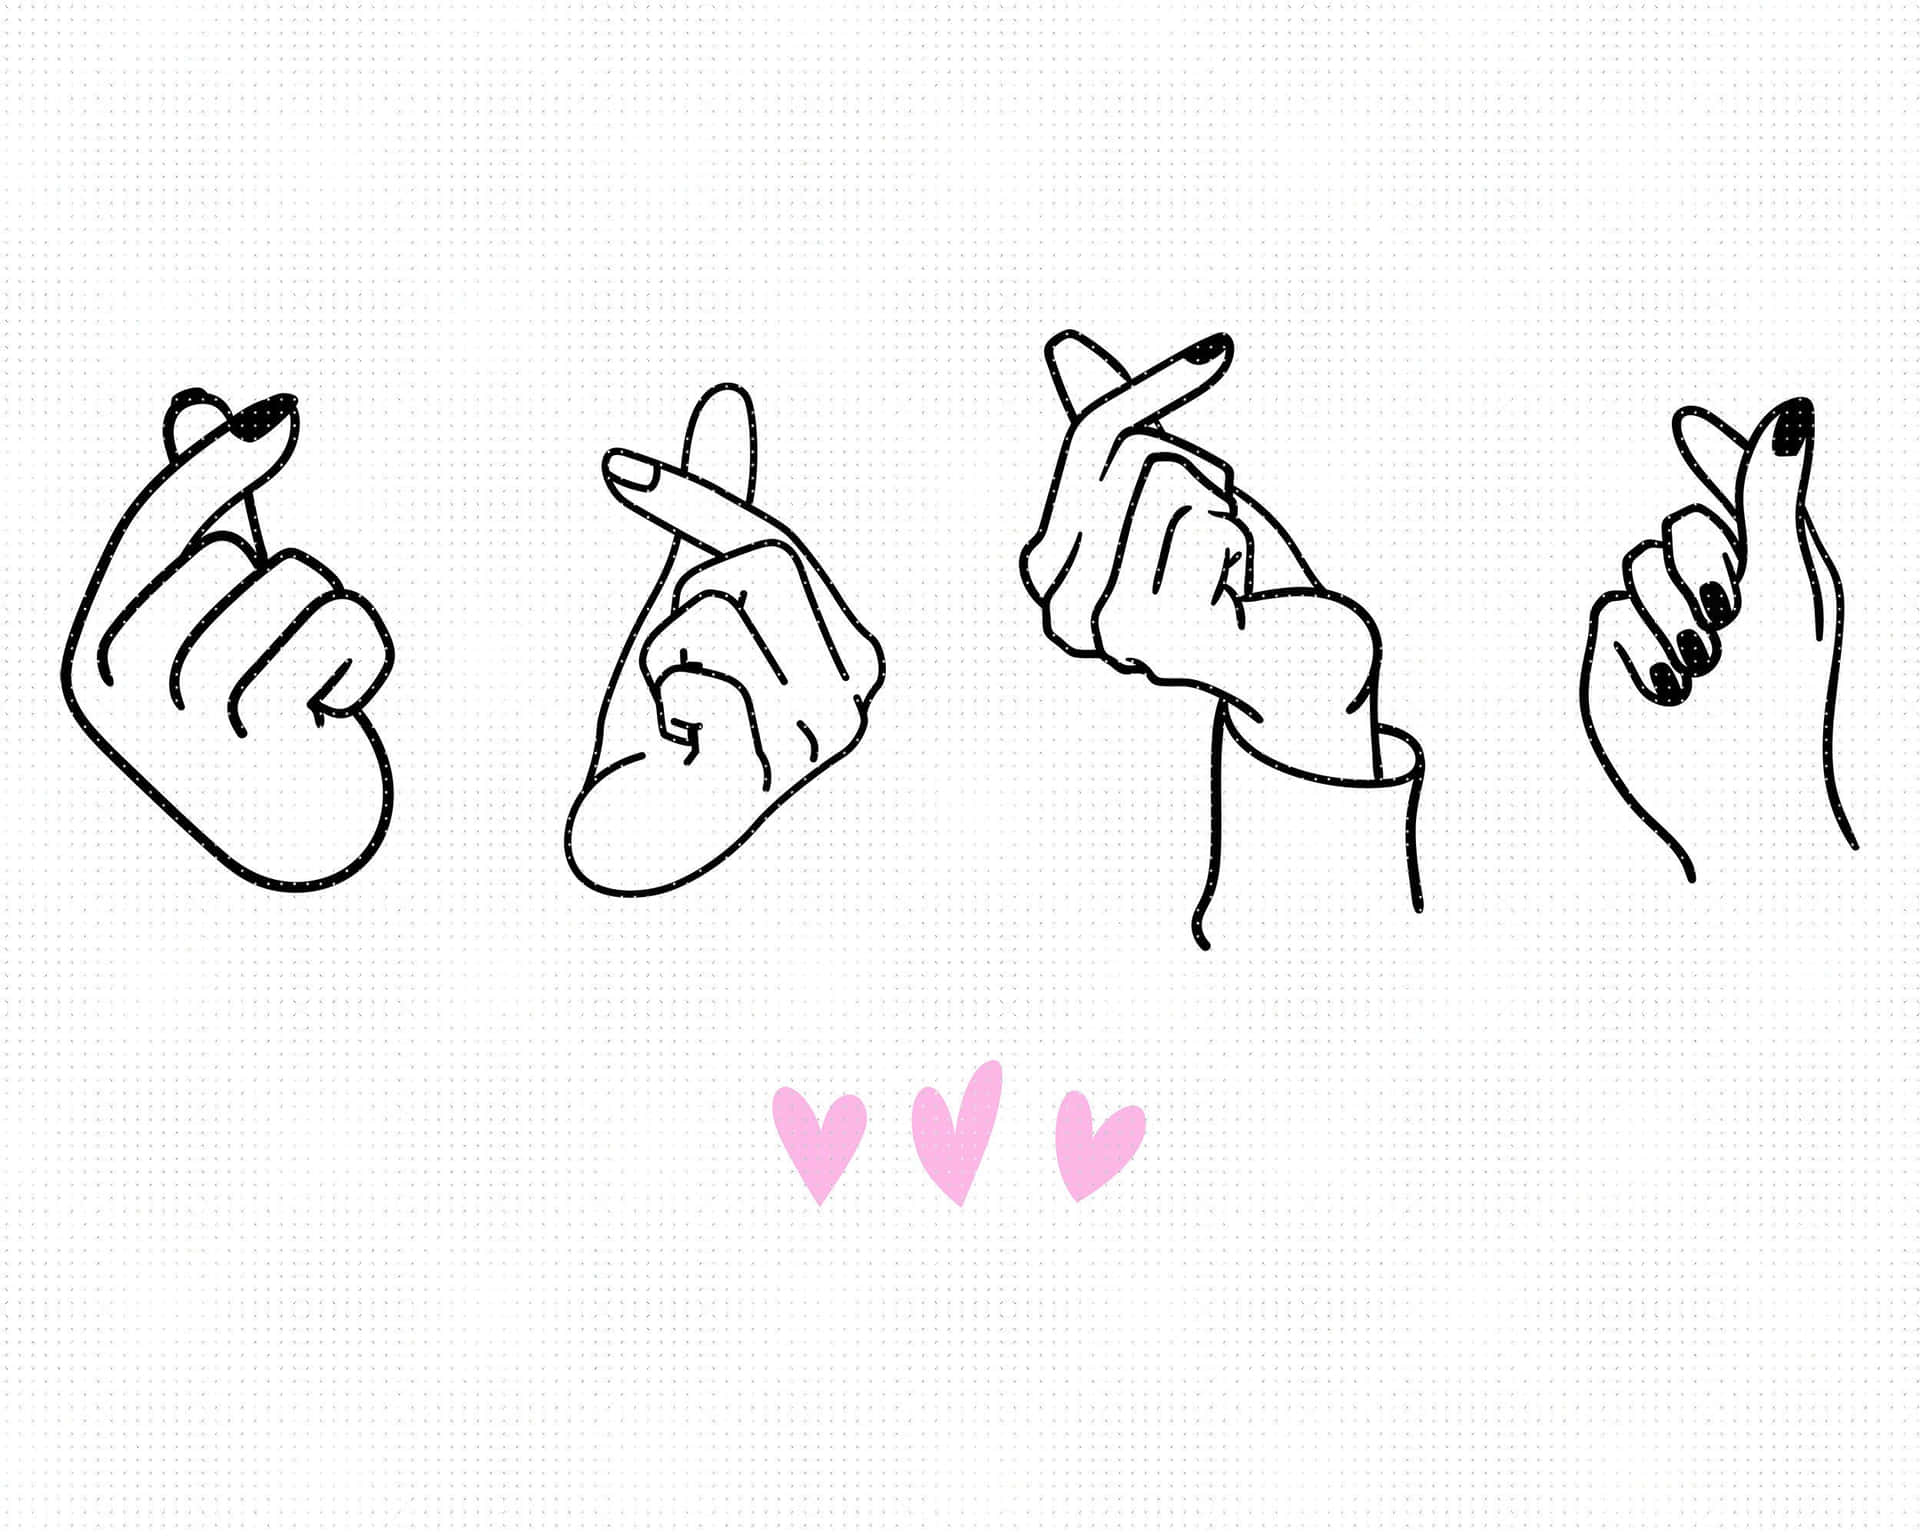 BTS Finger Heart Four Hand Gesture Wallpaper